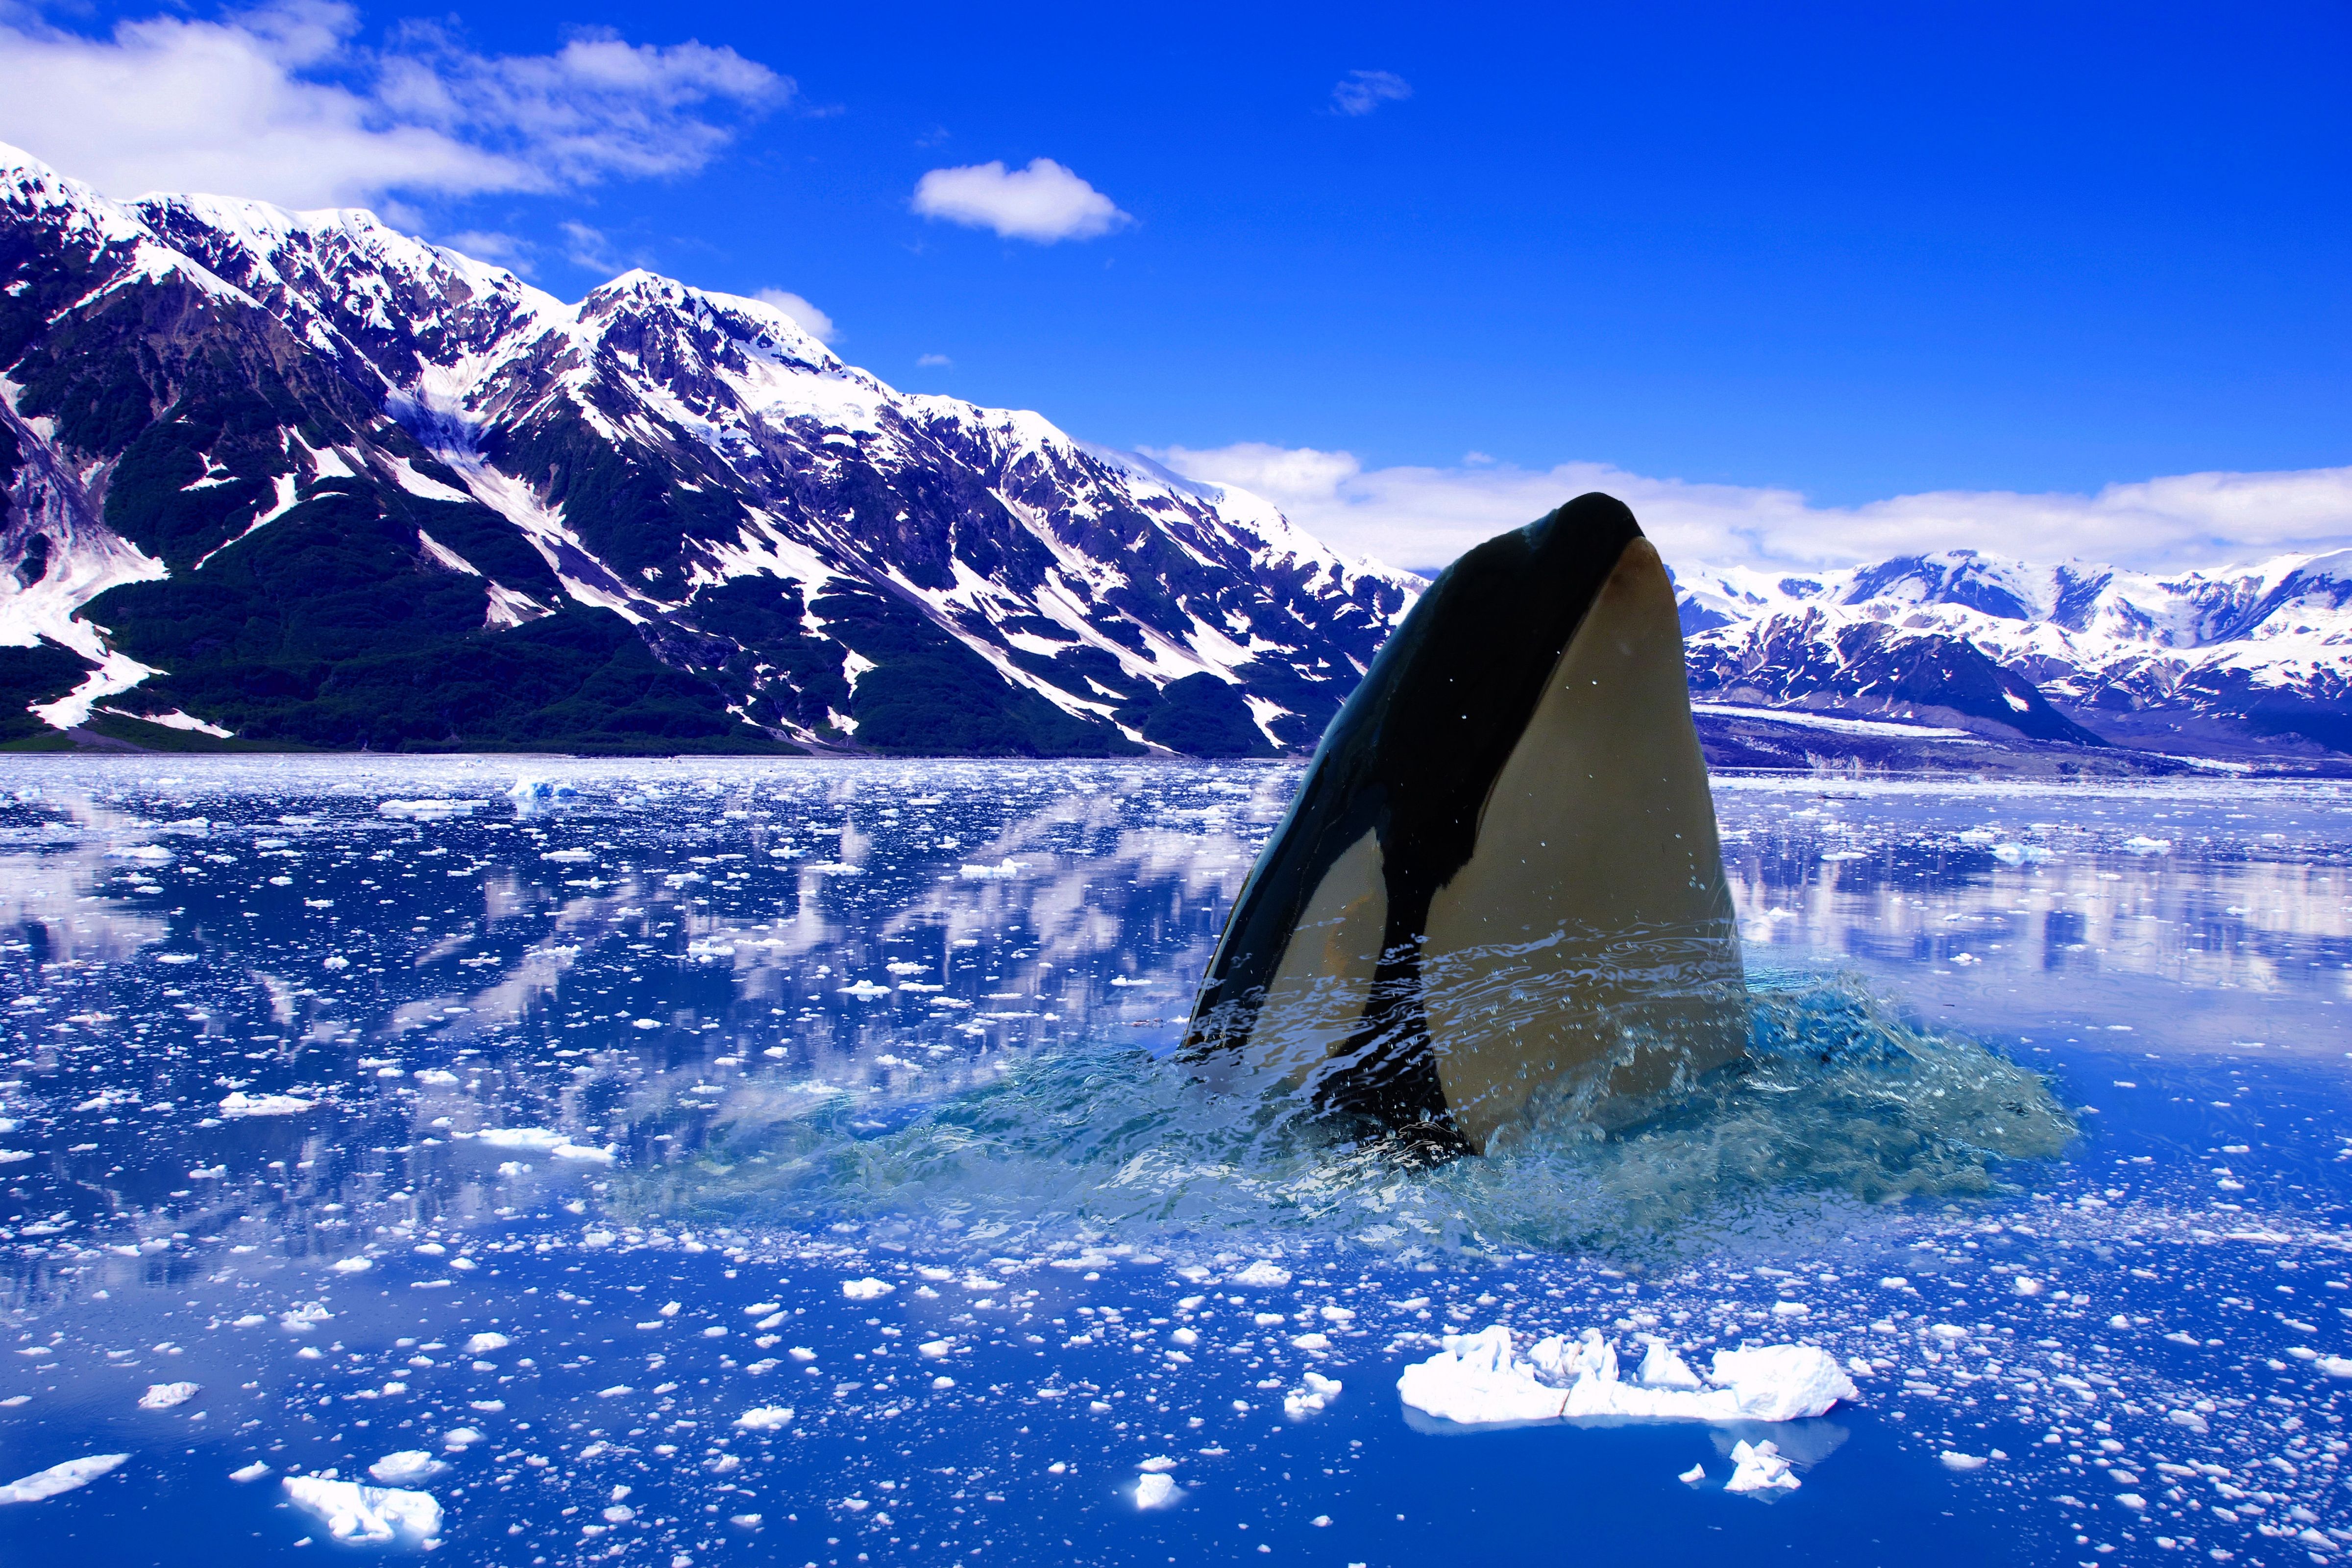 Killer Whales In The Atlantic Ocean - ocean wildlife list